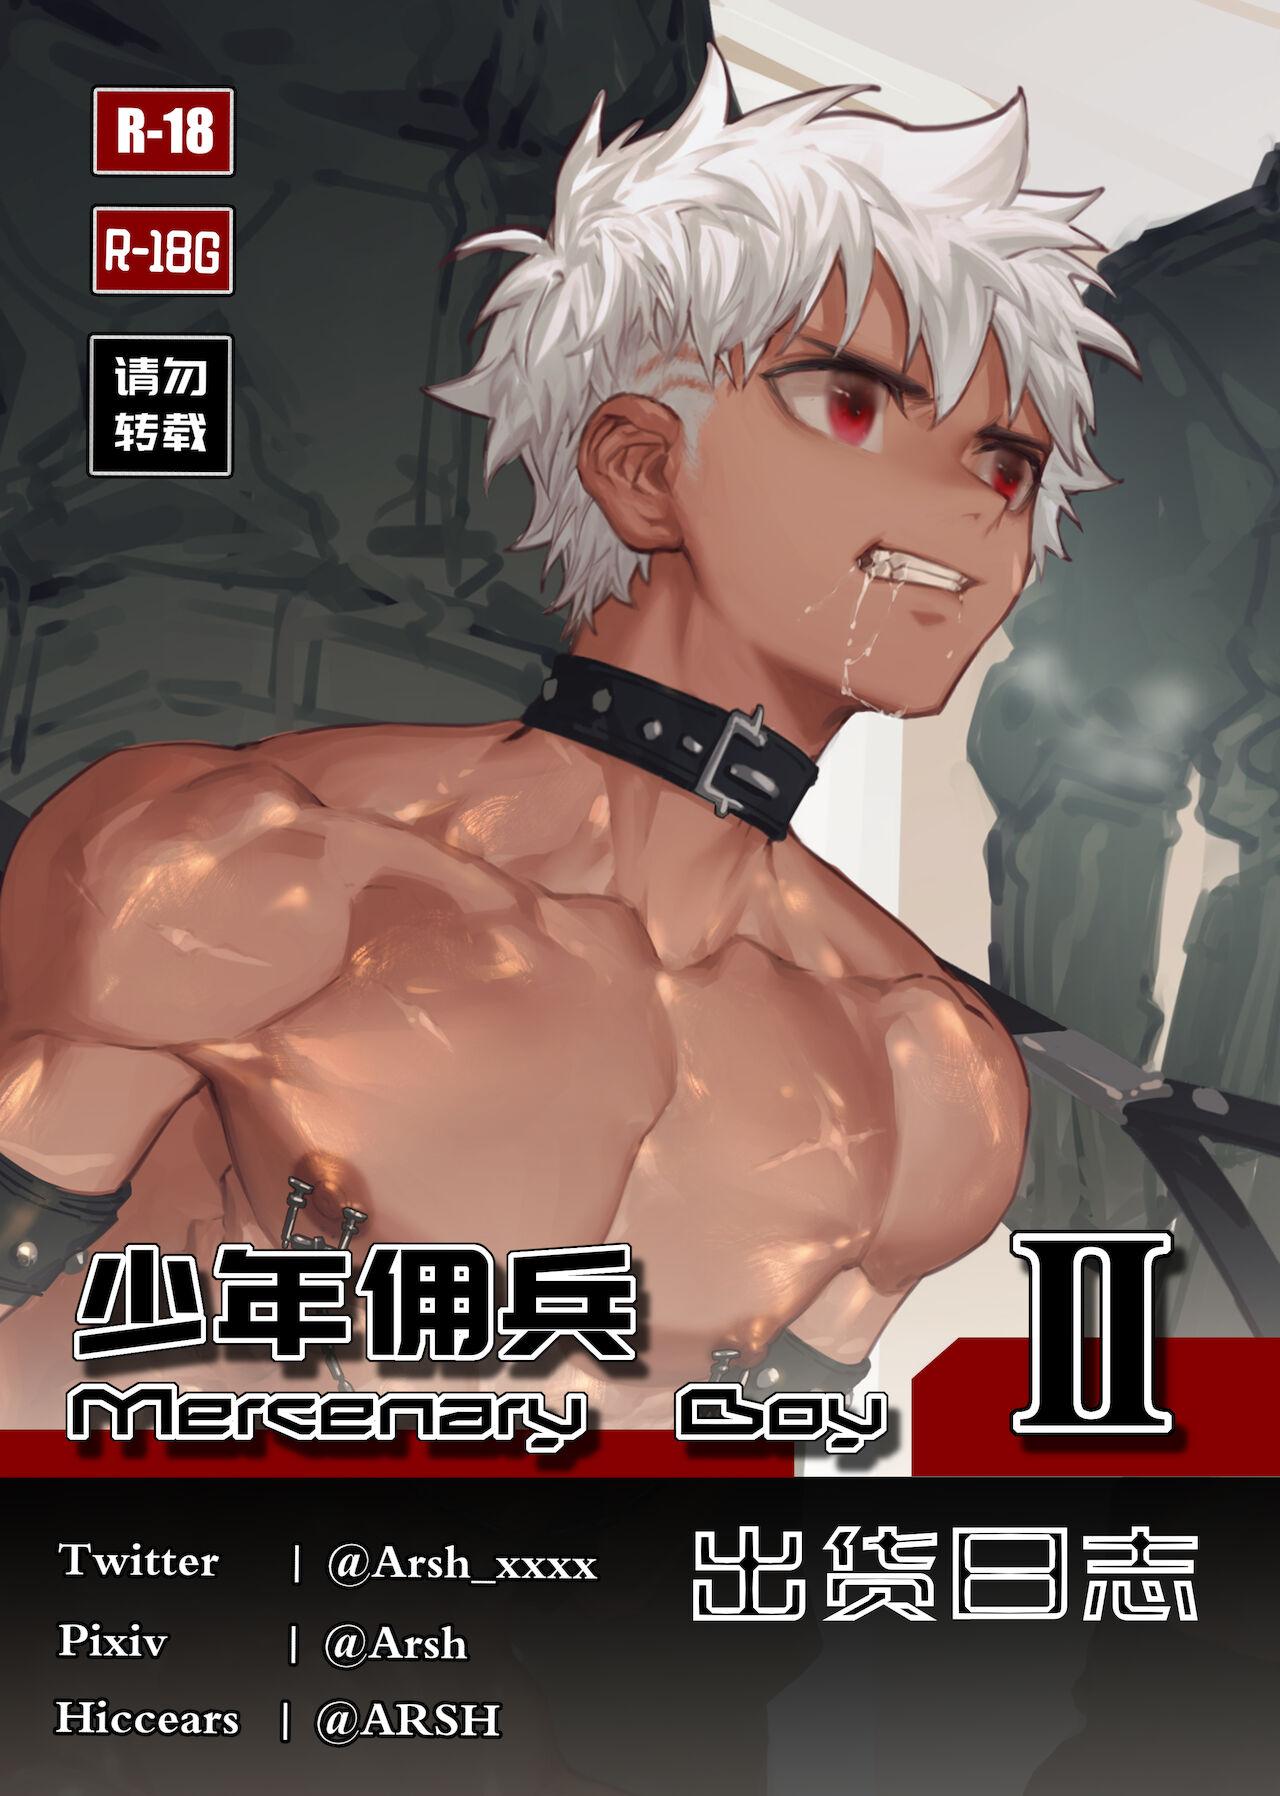 Mercenary Boy II 0